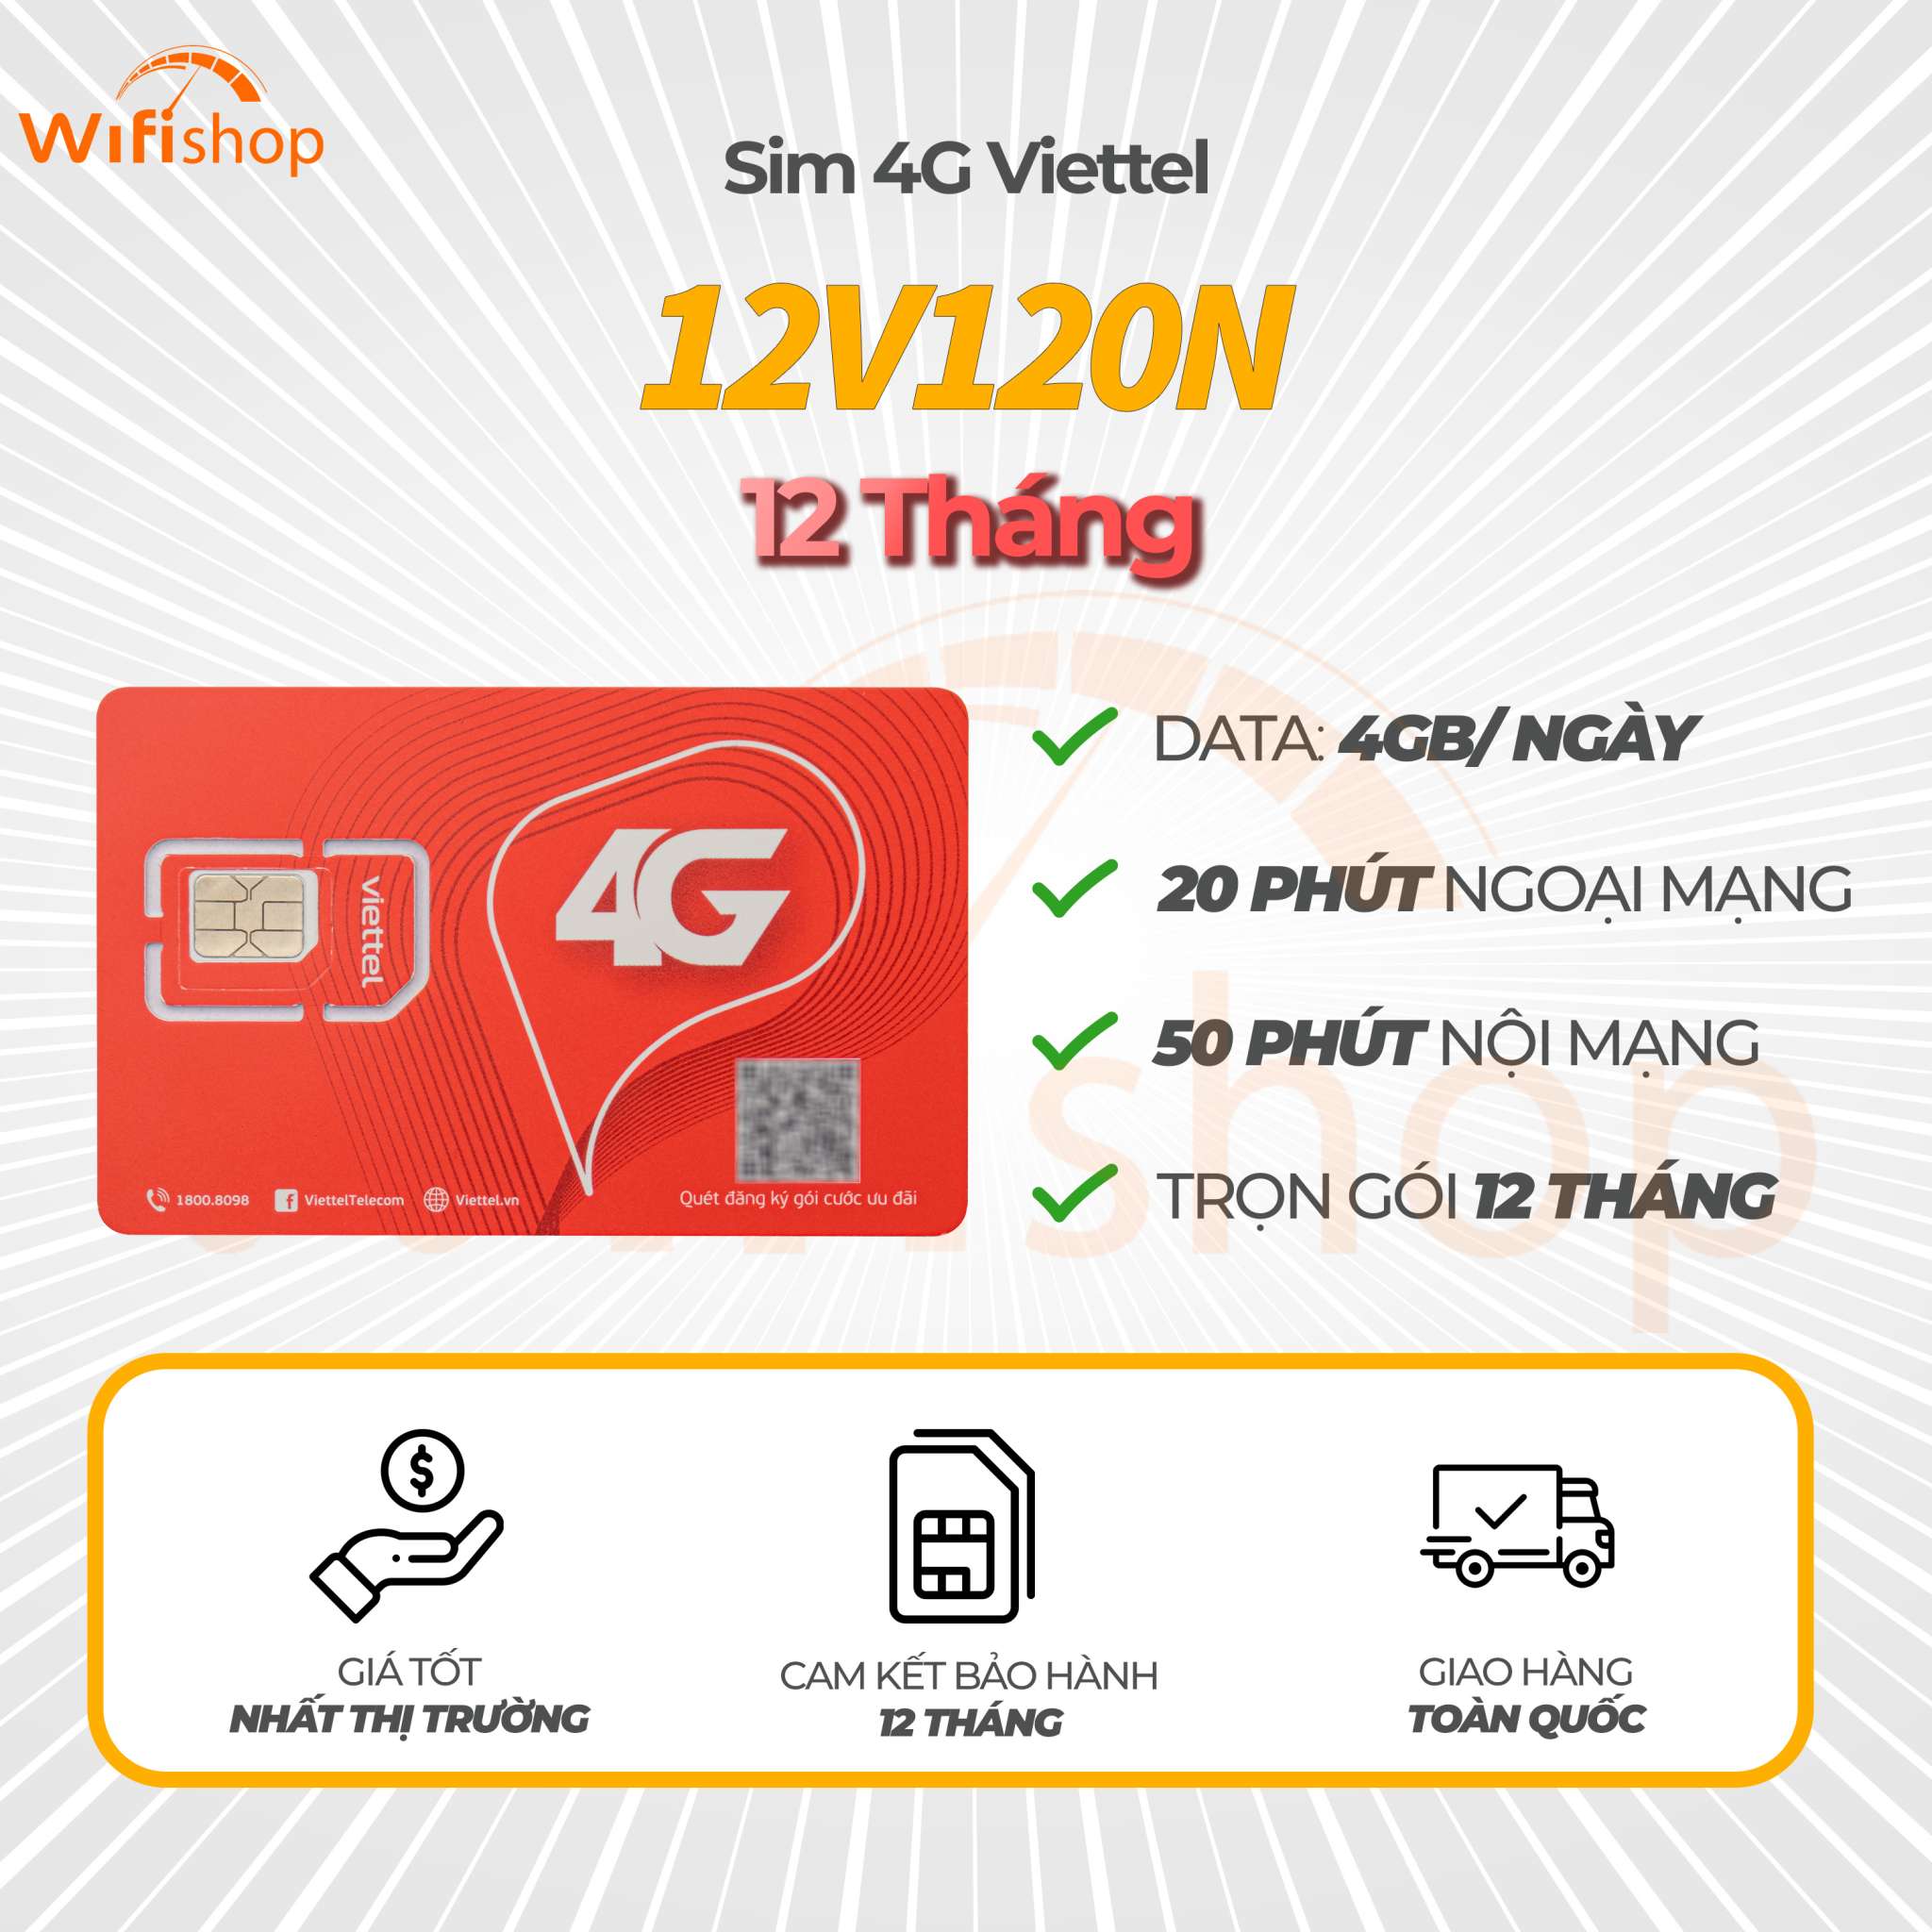 Sim 4G Viettel  V120N, ưu đãi 4GB/ ngày, miễn phí 20 phút nội mạng + 50 phút ngoại mạng, trọn gói 12 tháng không phải nạp tiền